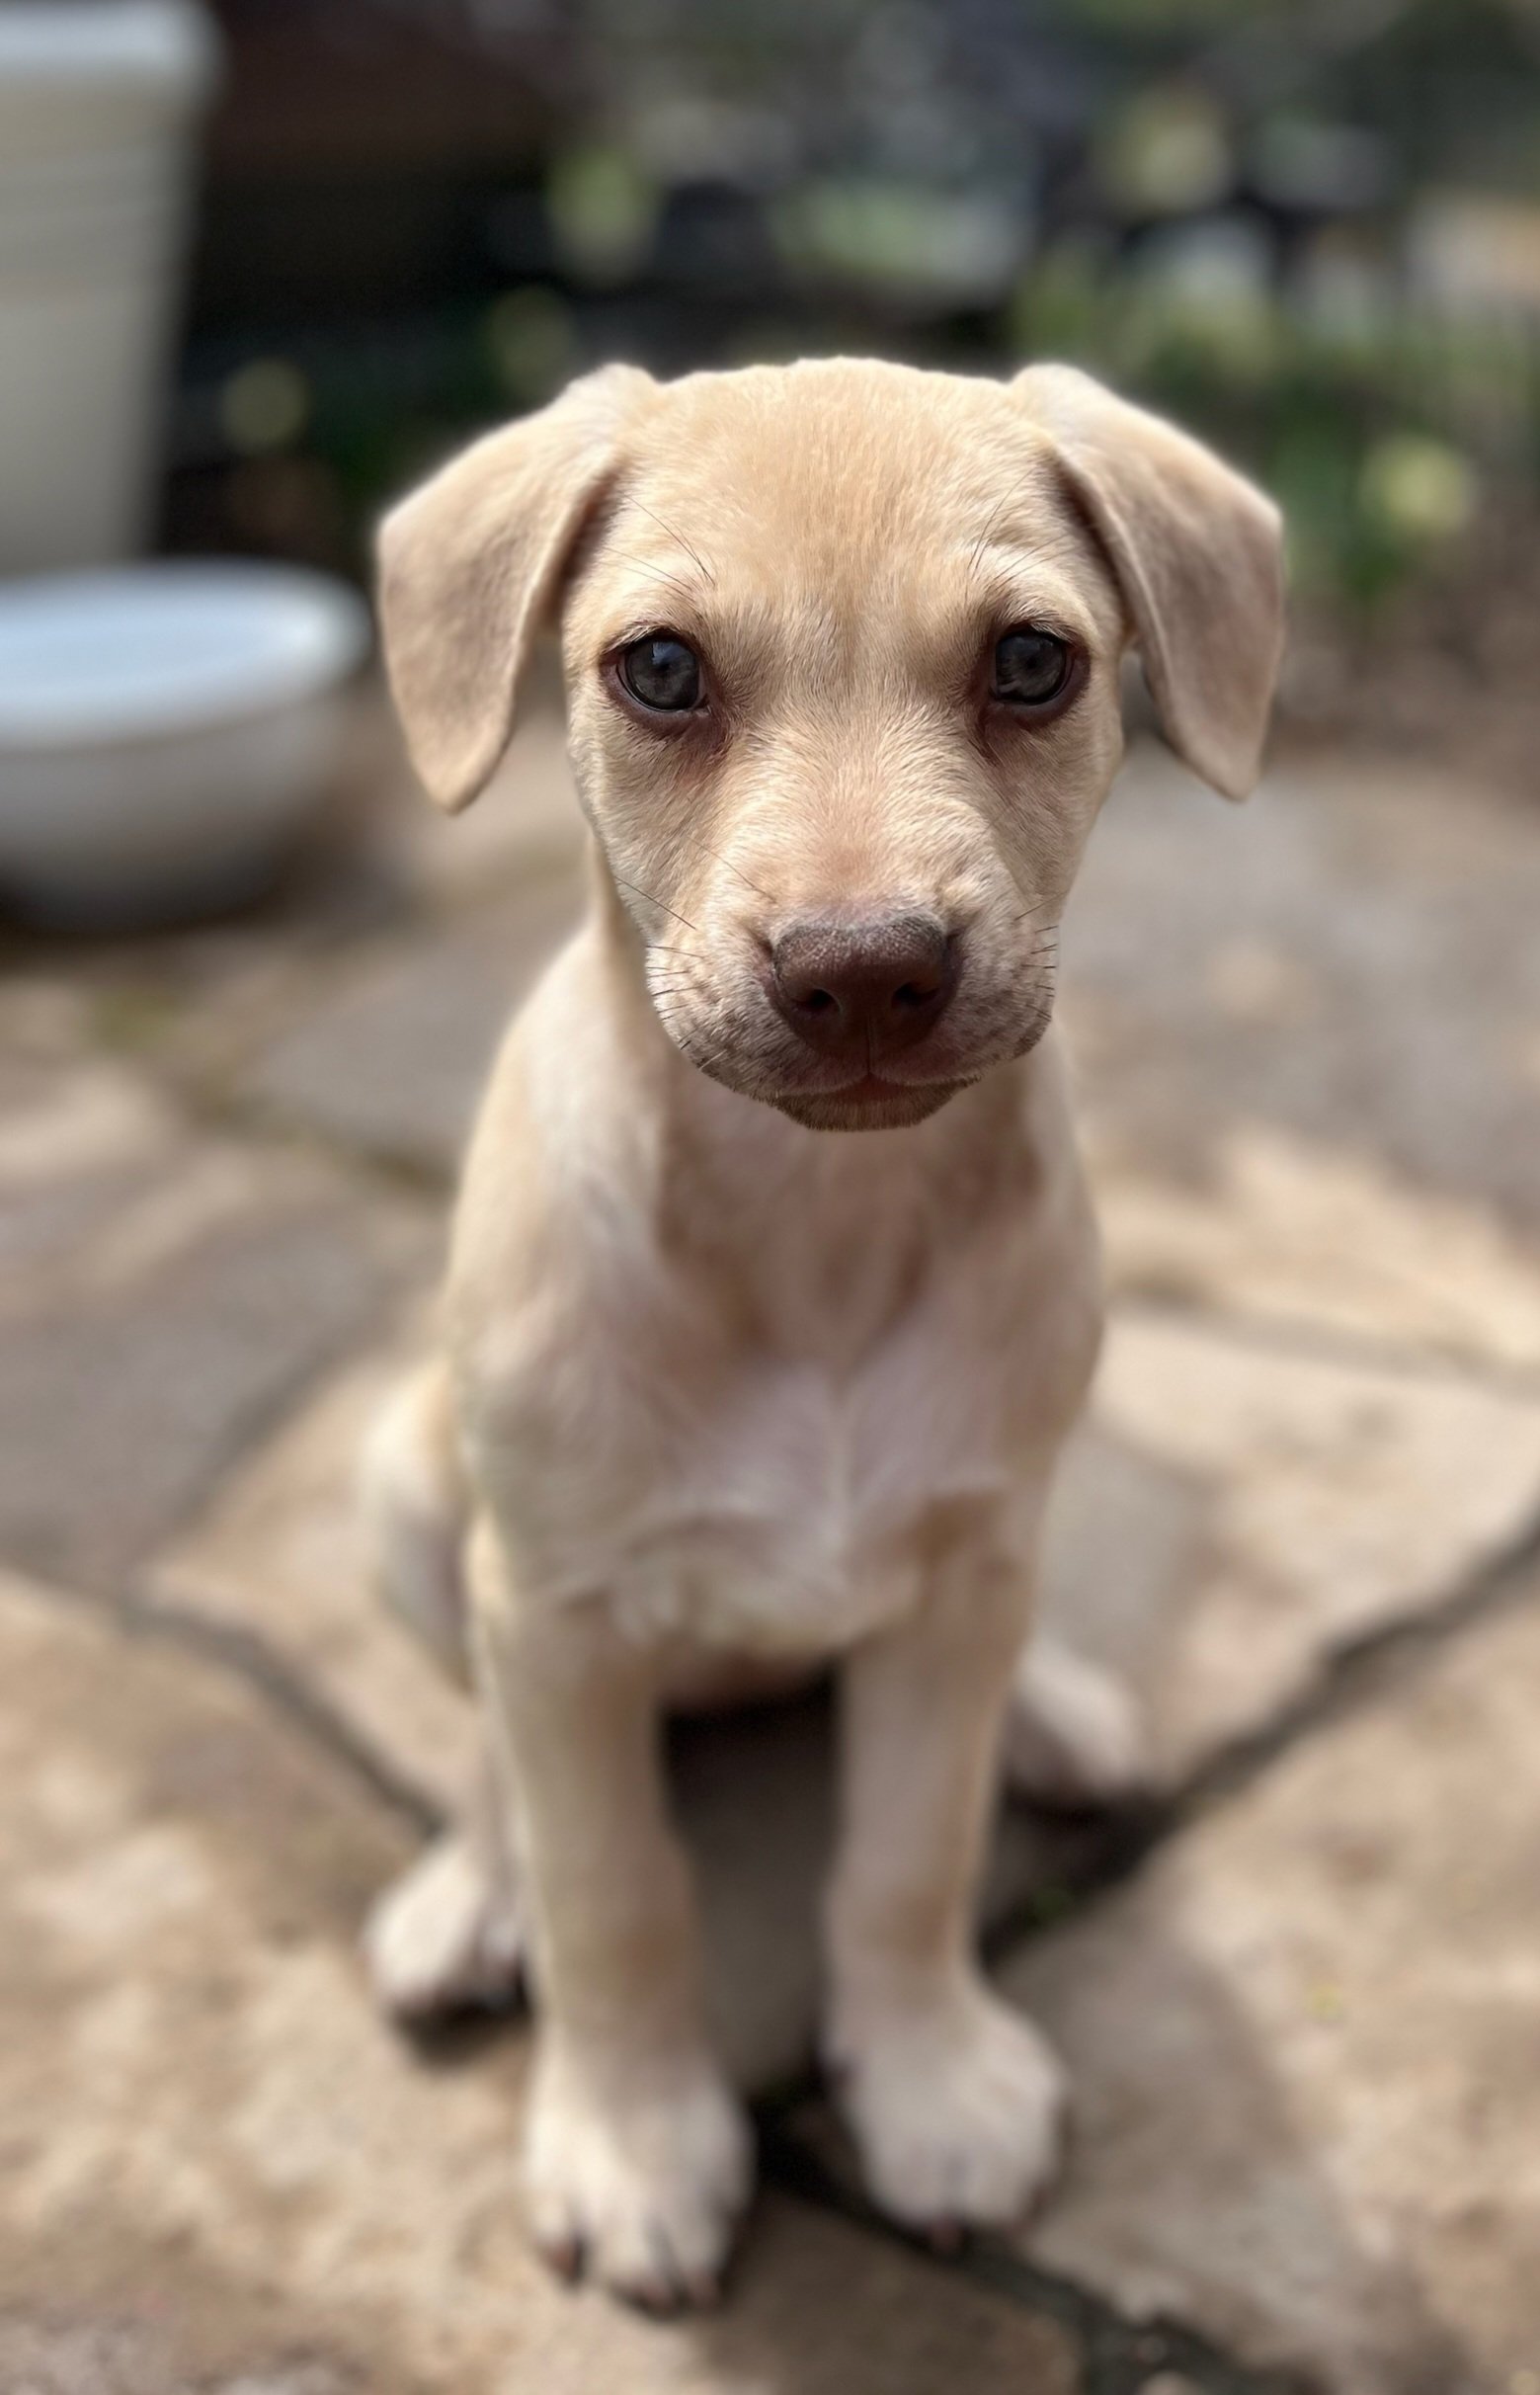 adoptable Dog in Westport, NY named Fern - 8 weeks